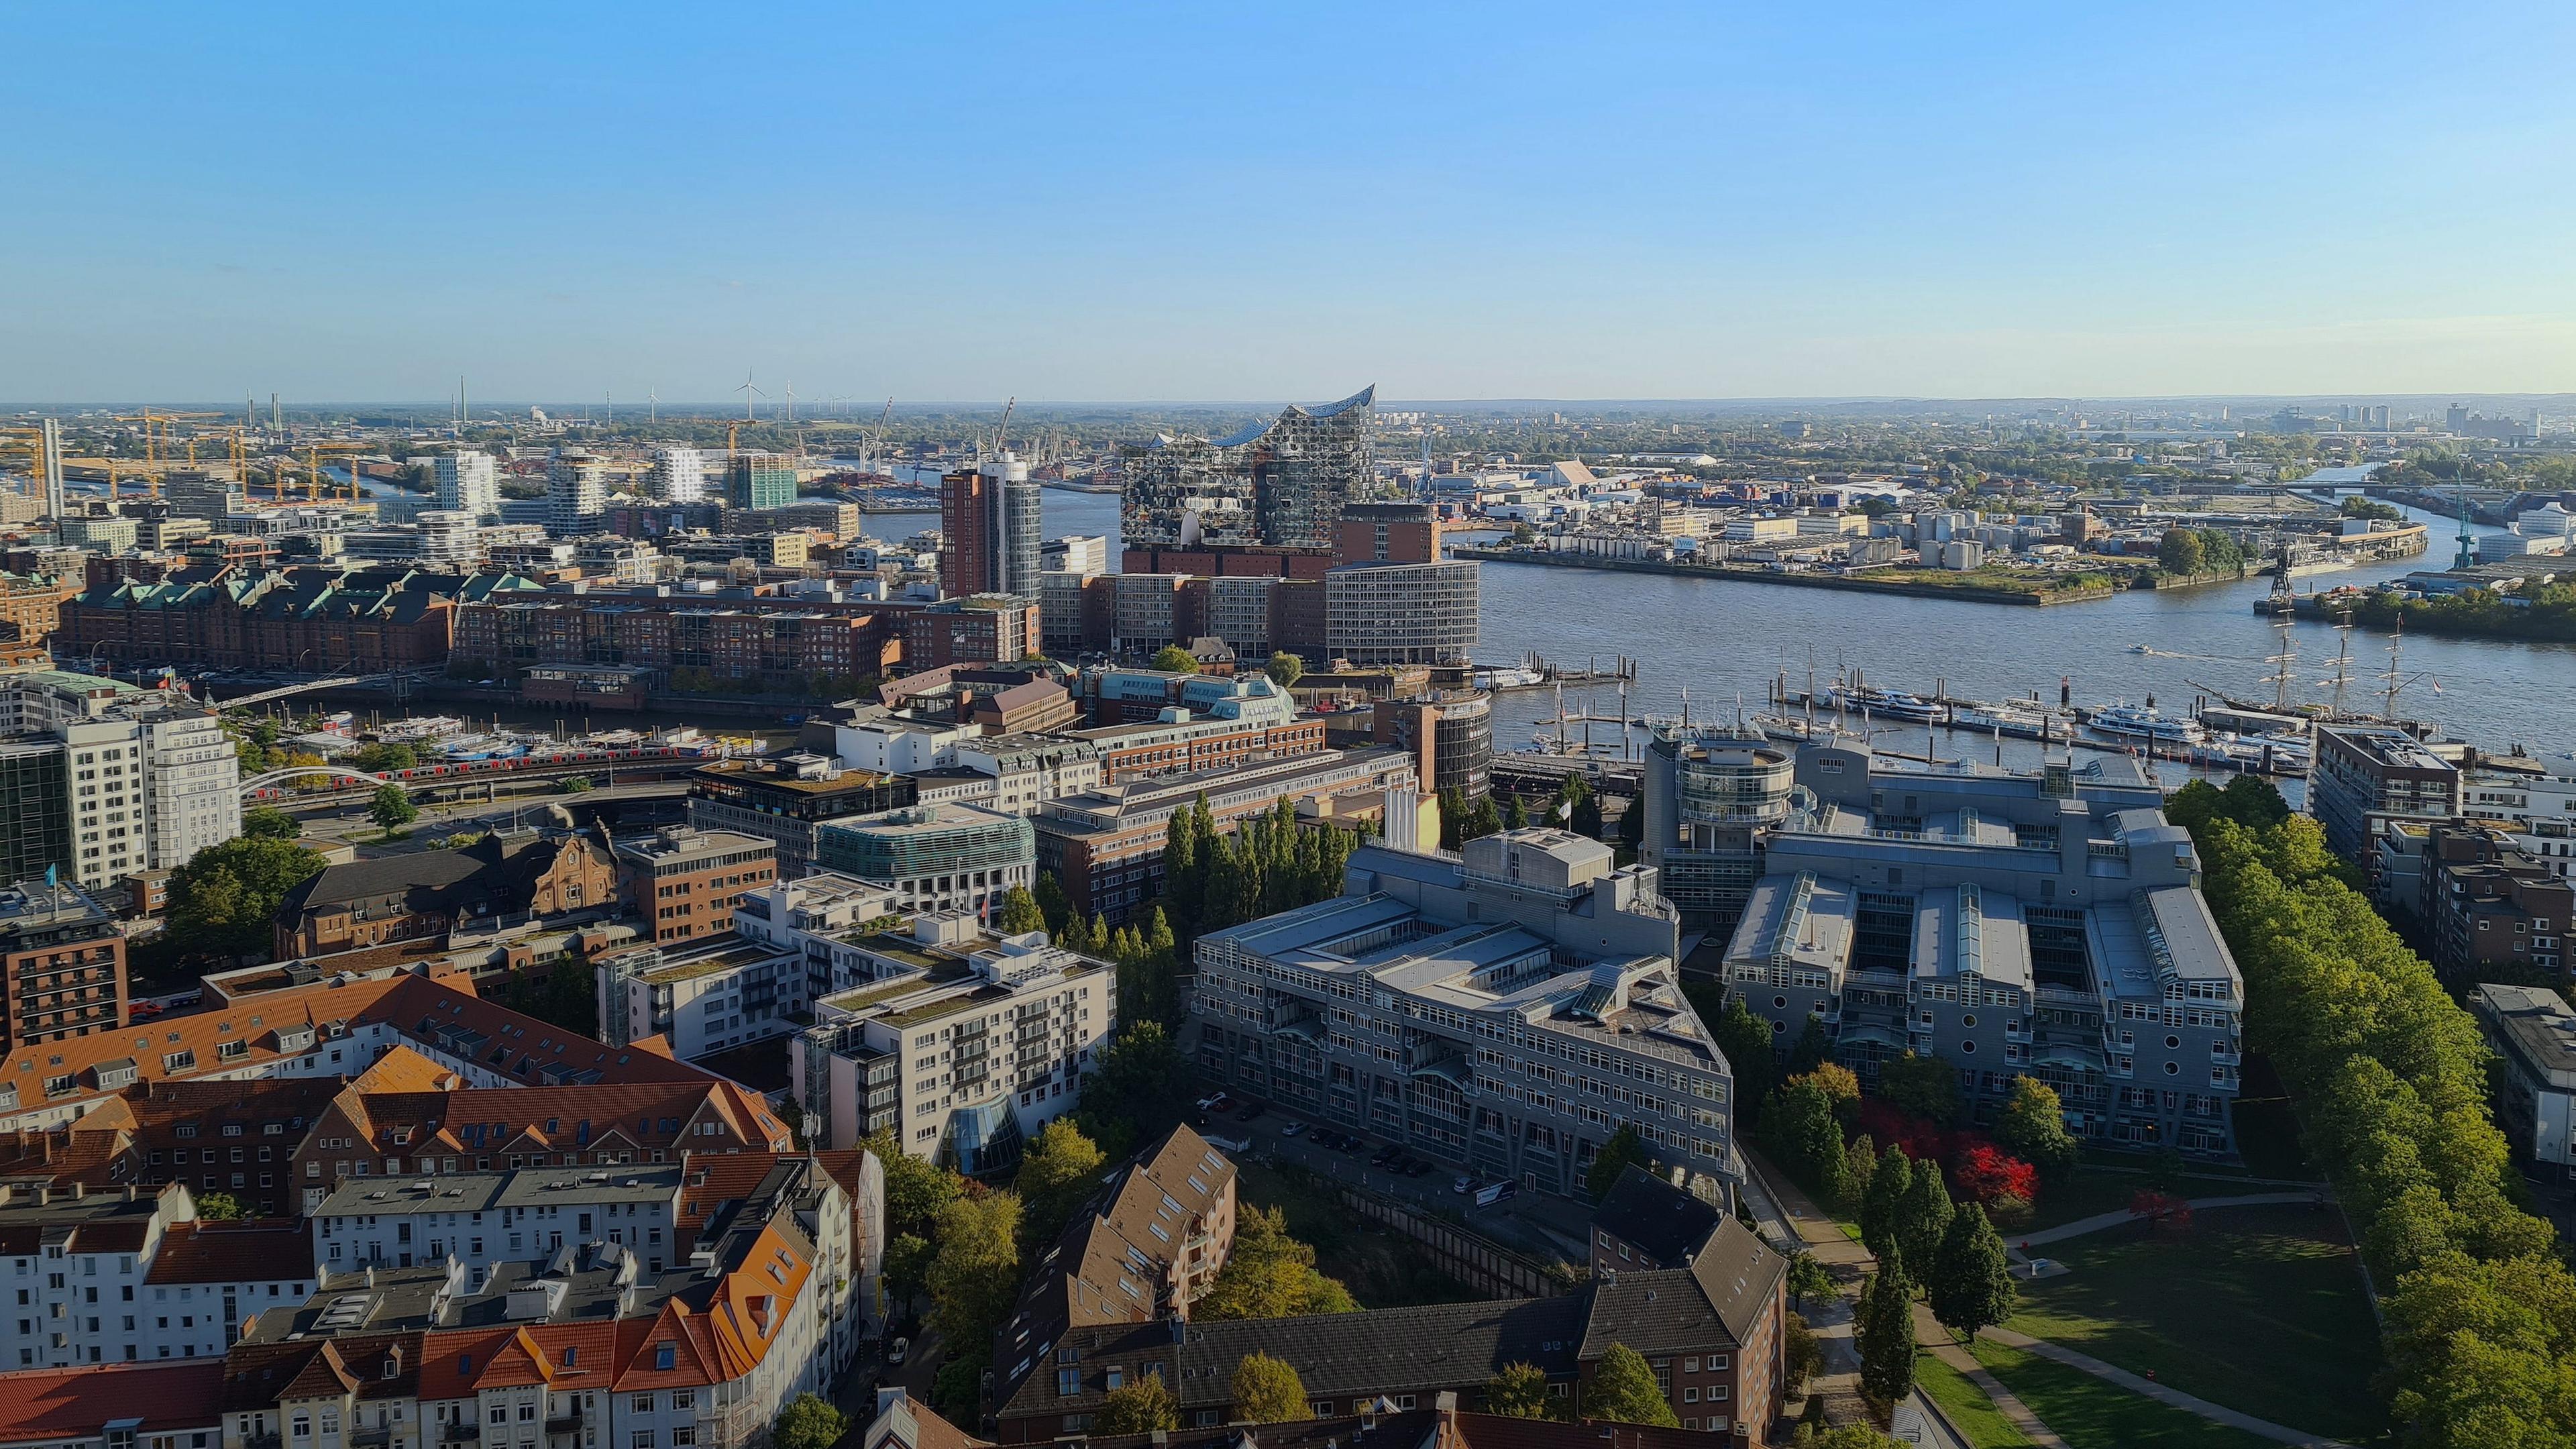 Stadtansicht von Hamburg, aufgenommen am 17.10.2022